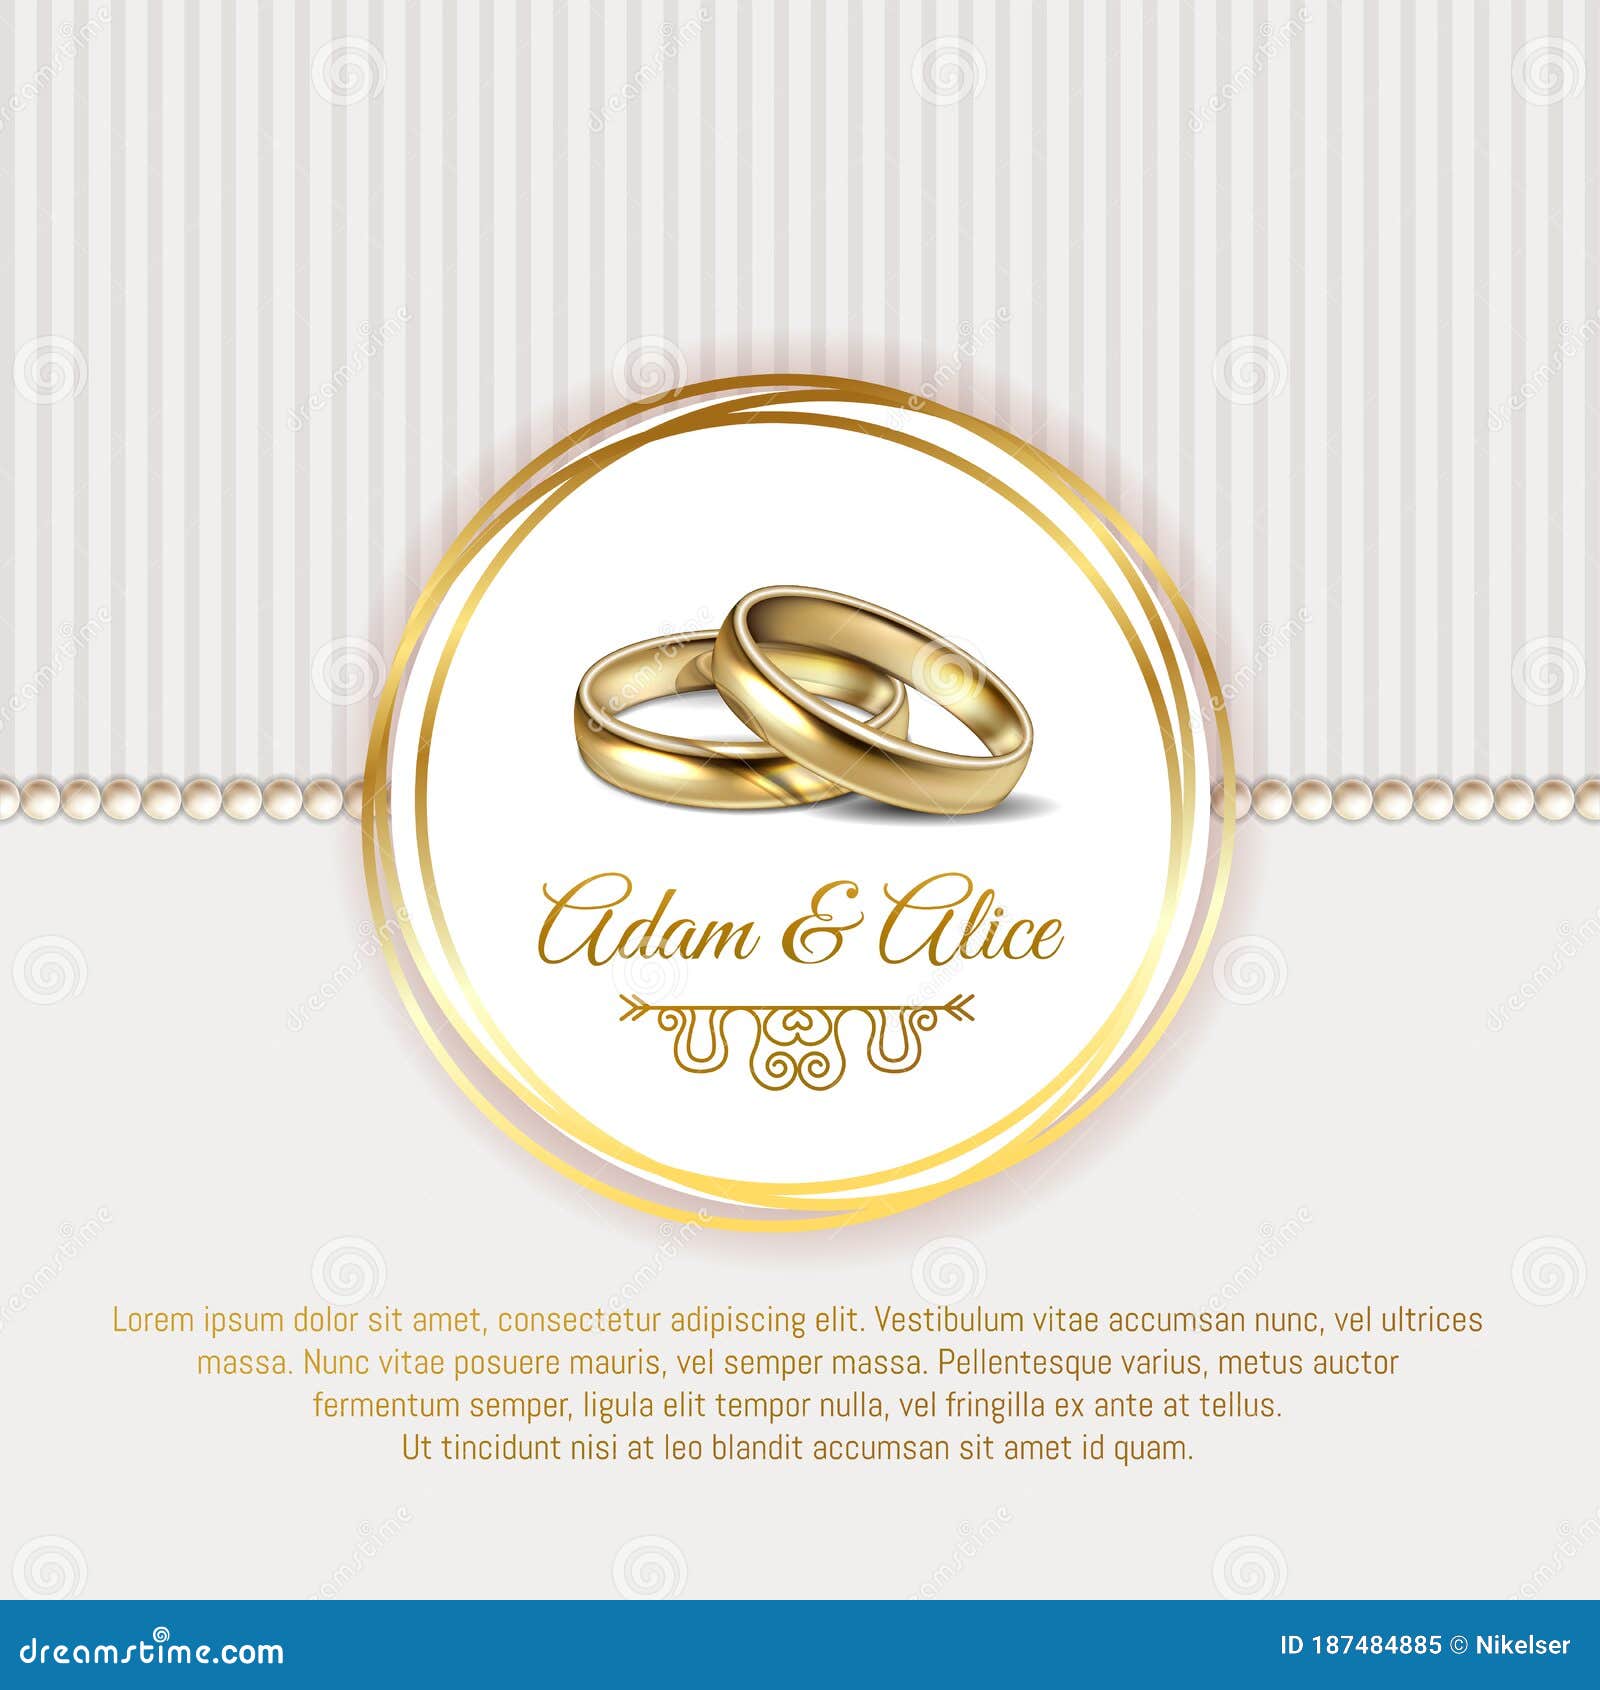 Beautiful Elegant Premium Wedding Invitation in White and Gold Colors ...